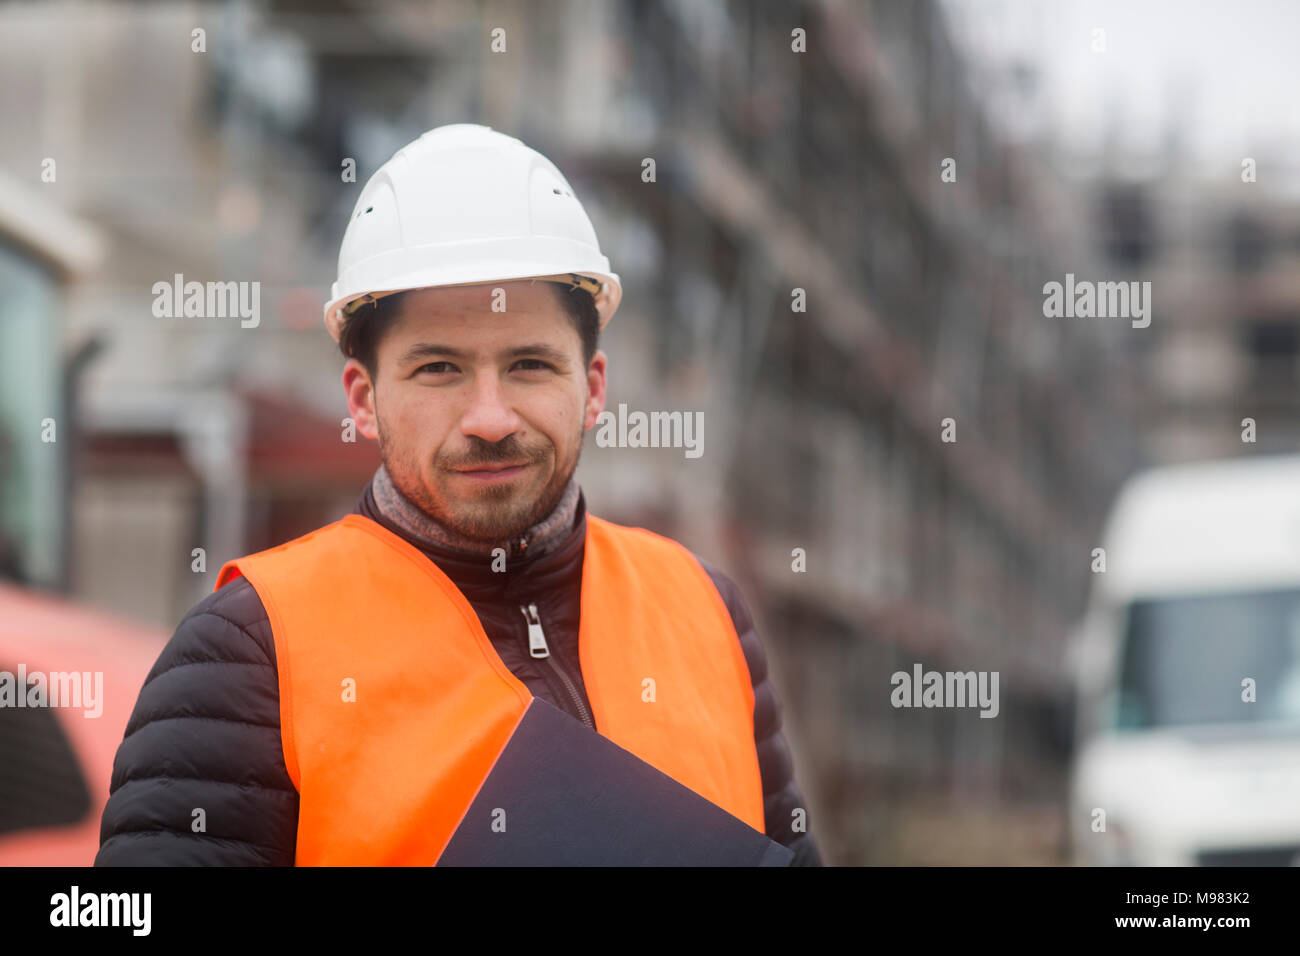 Portrait von Inhalt mann mit warnweste und Helm auf der Baustelle Stockfoto